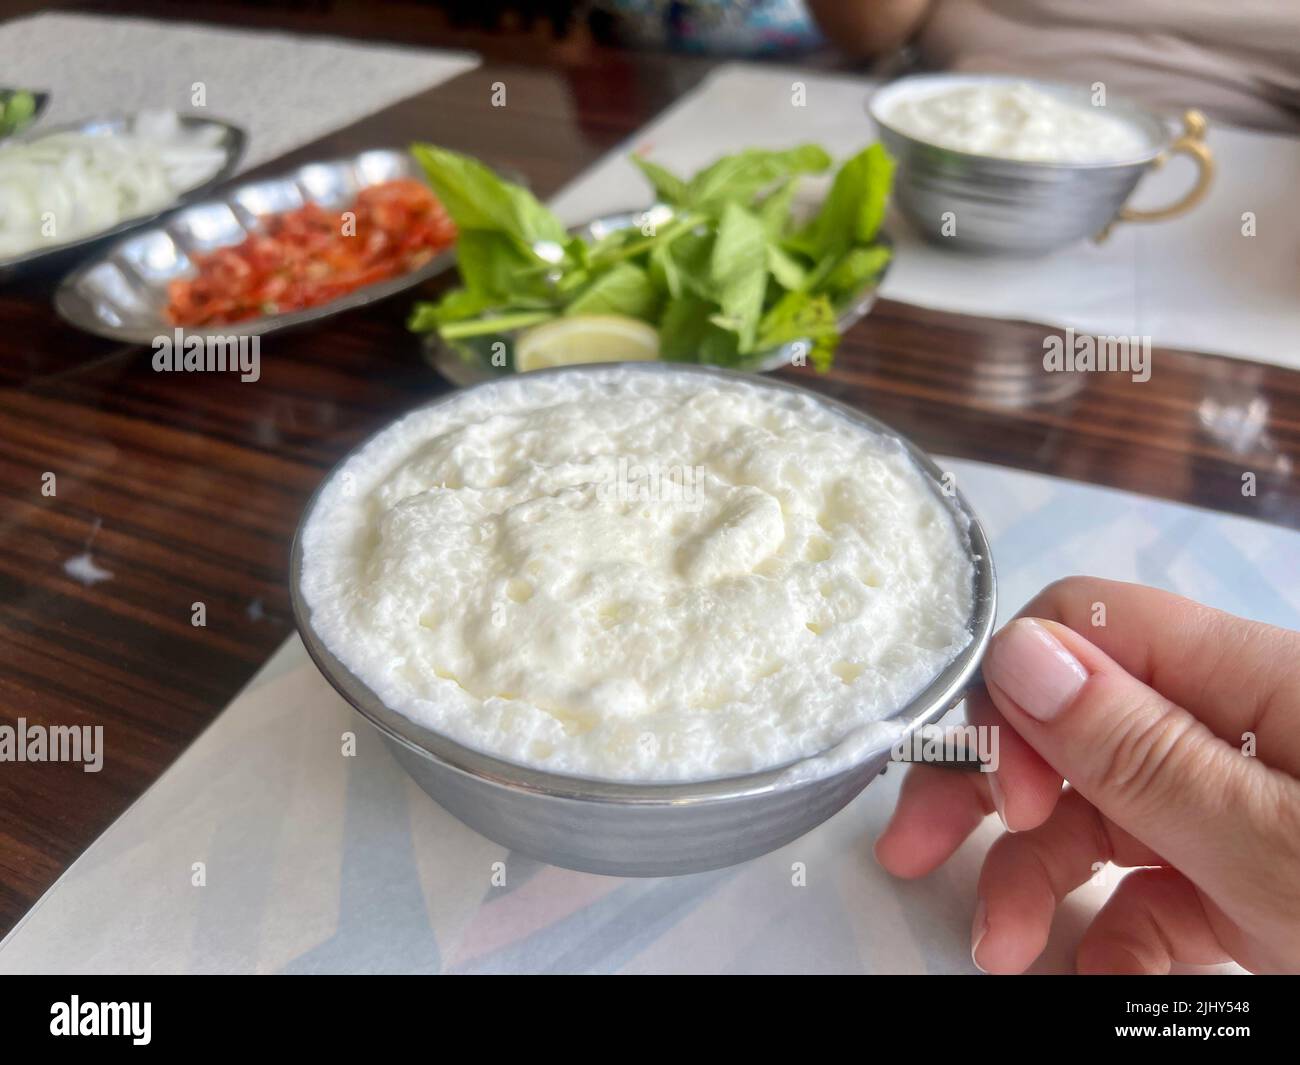 Babeurre, boisson traditionnelle au yaourt ou boisson connue sous le nom d'ayran en turc avec mousse dans la tasse en métal argenté sur la table en dinde. Babeurre, traditionnel Banque D'Images